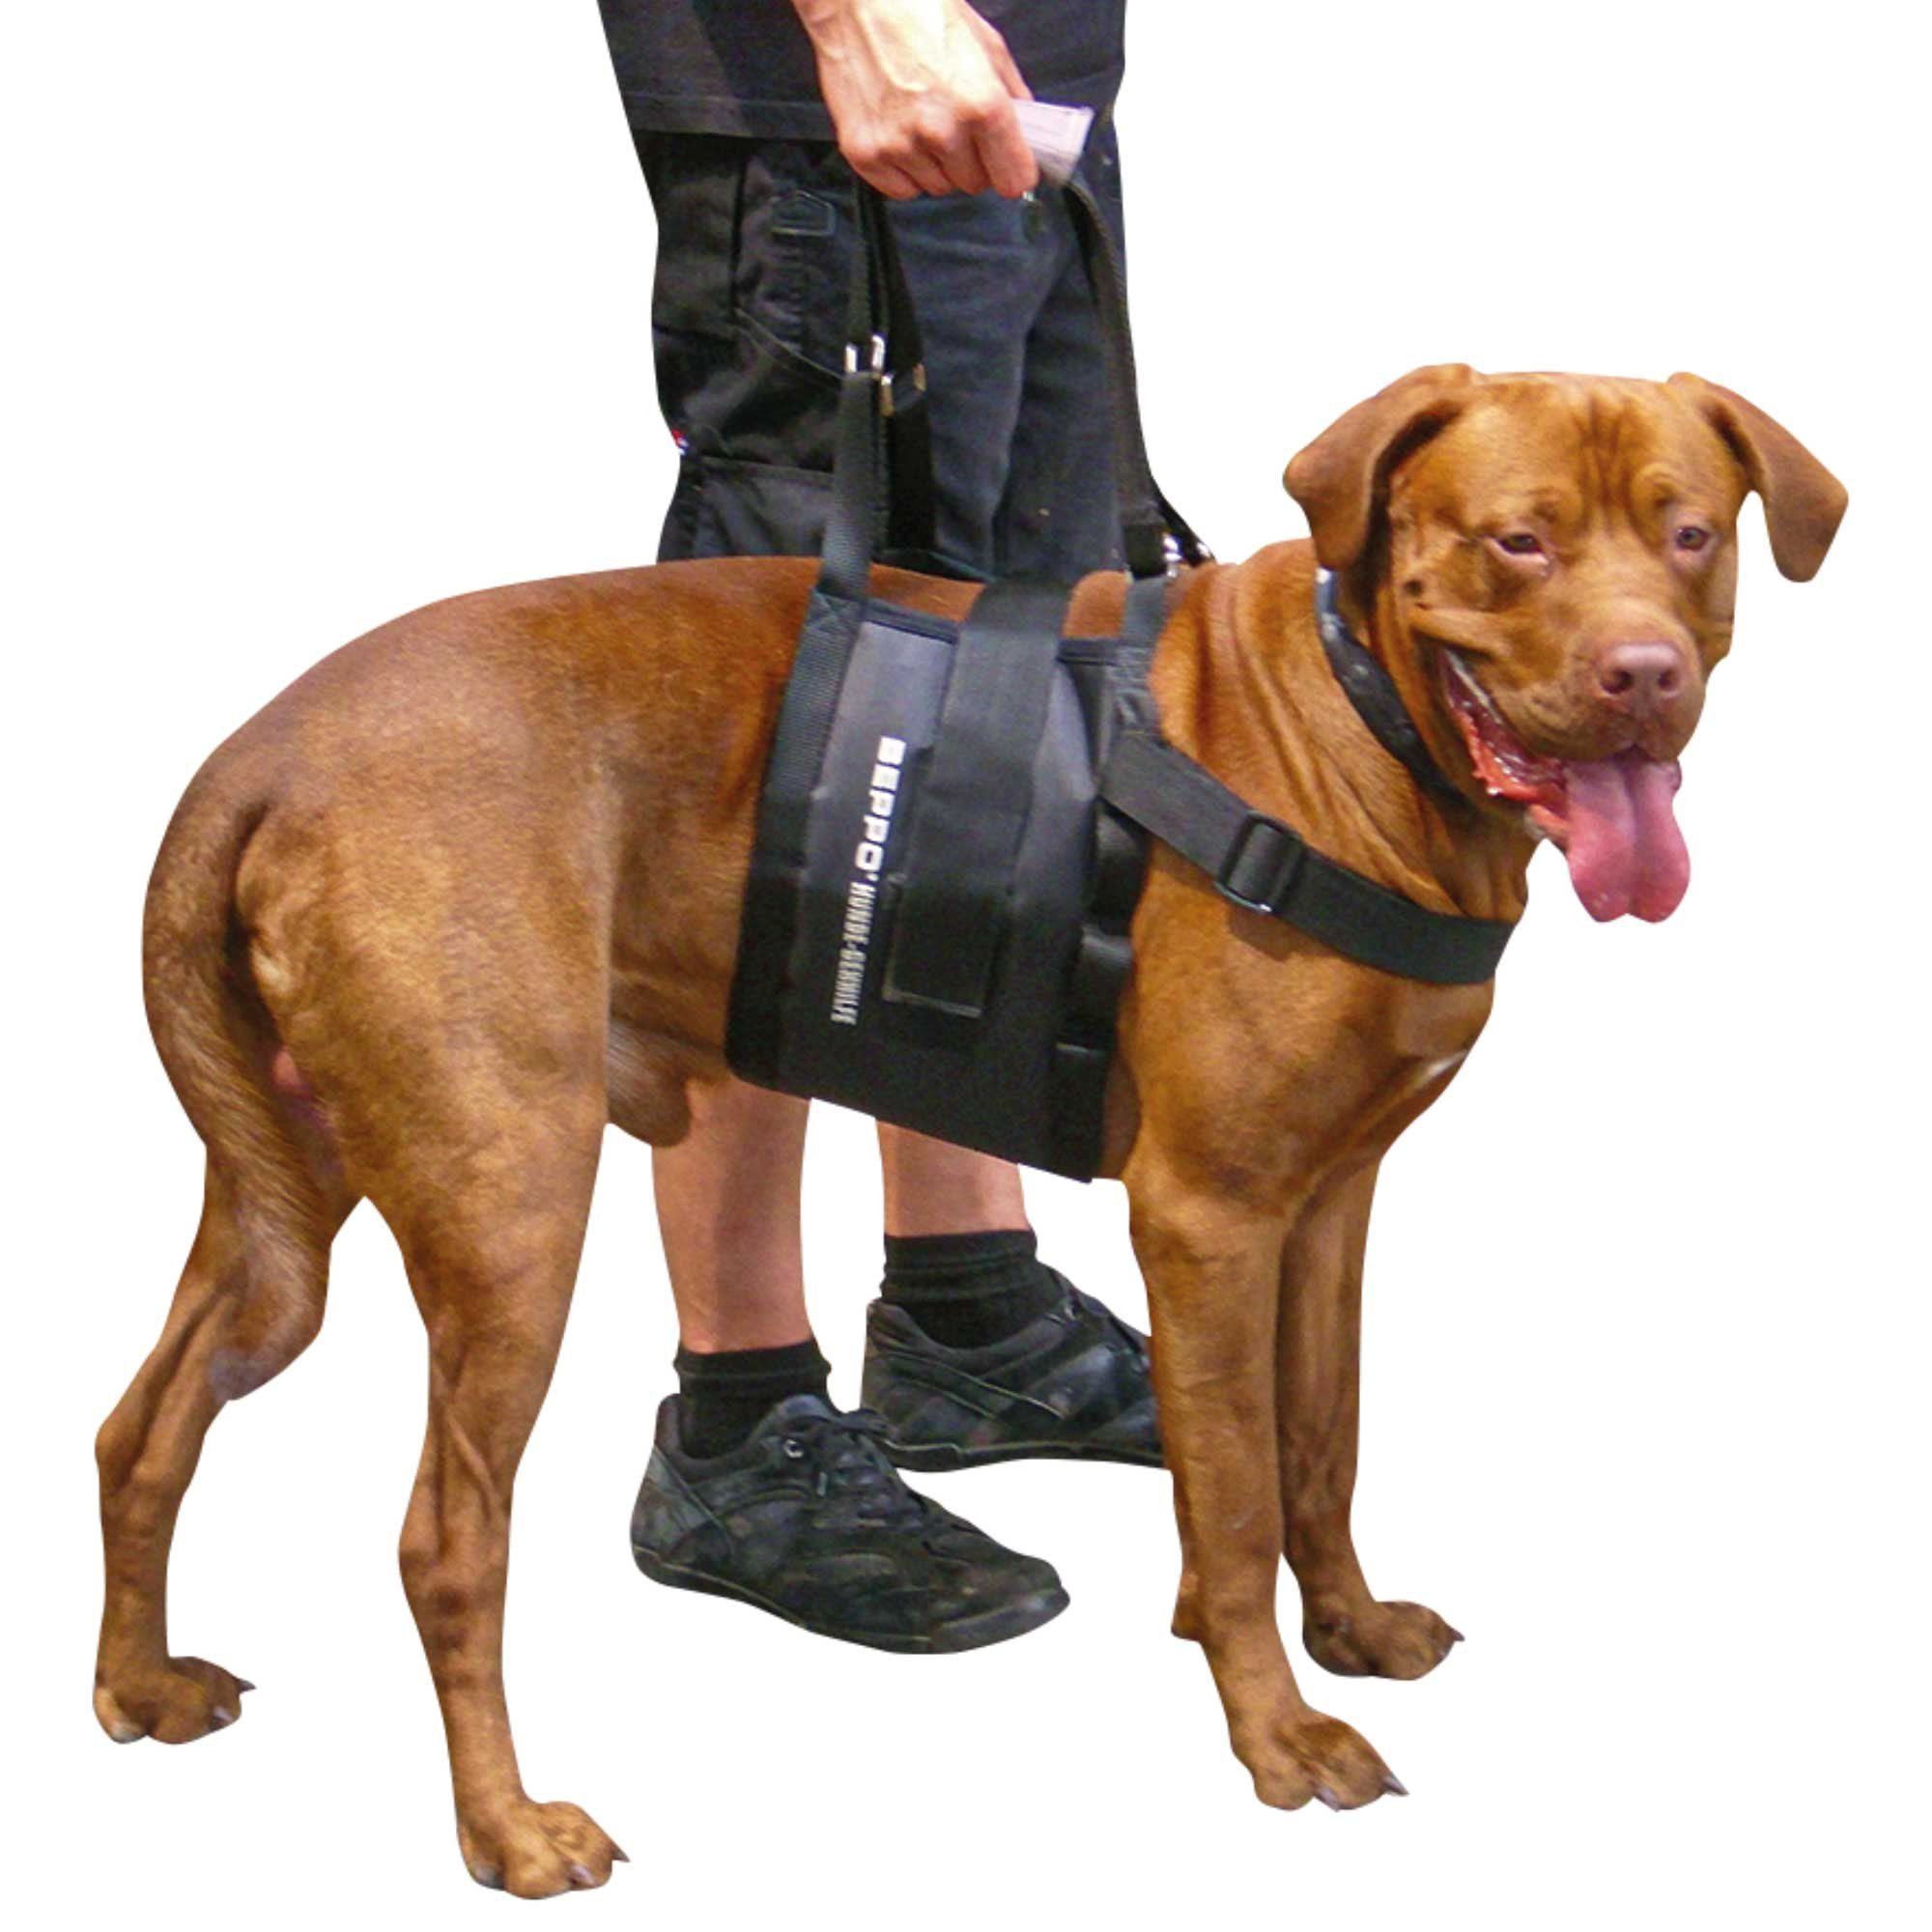 Schecker Hunde-Sicherheitsgeschirr Beppo® Hunde Gehhilfe One-Size, Neopren, Hundetrage 20x70 cm, geeignet für Hunde mit Brustumfang 55 - 125 cm, Auflagefläche am Bauch: 20 cm